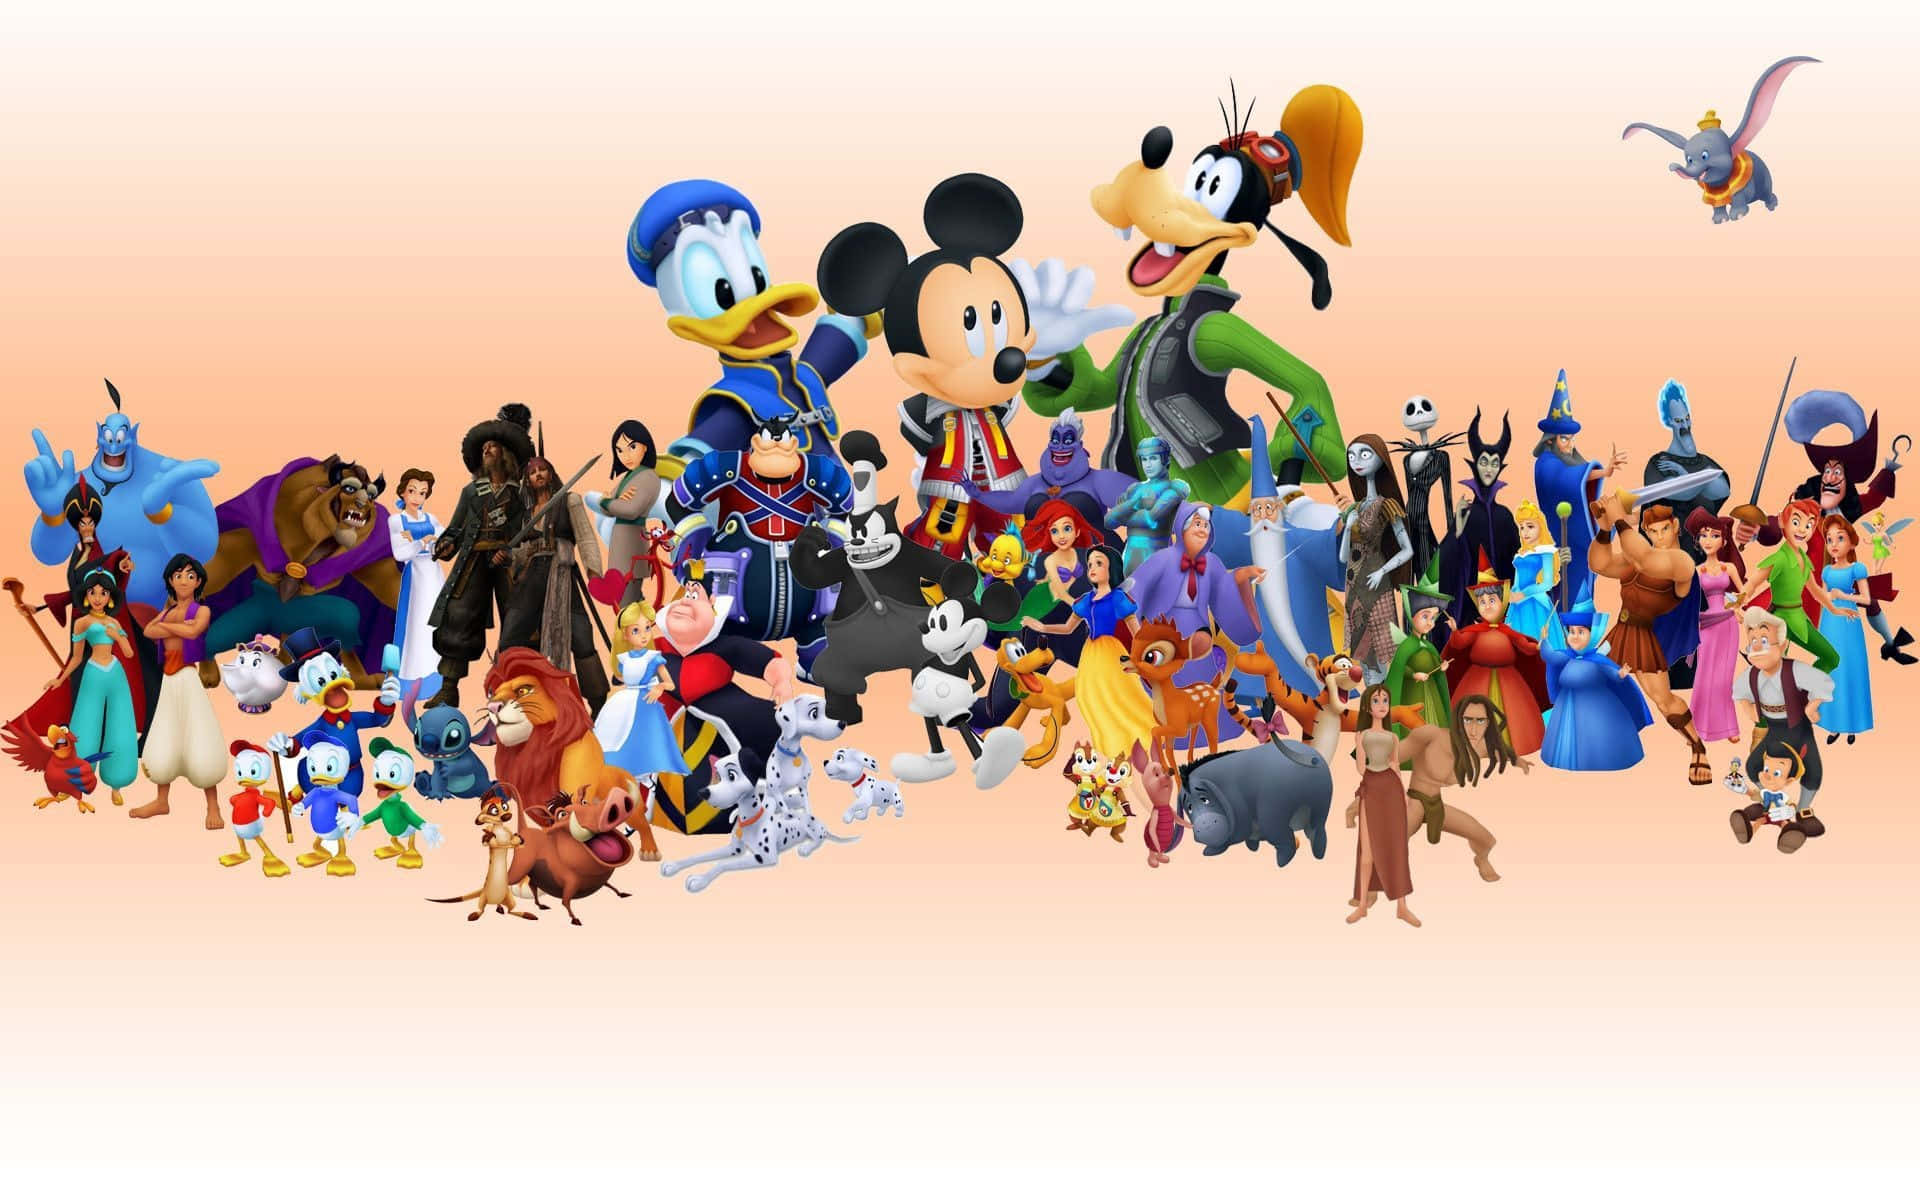 Disneyfigurer Grupperet Sammen I En Gruppe.